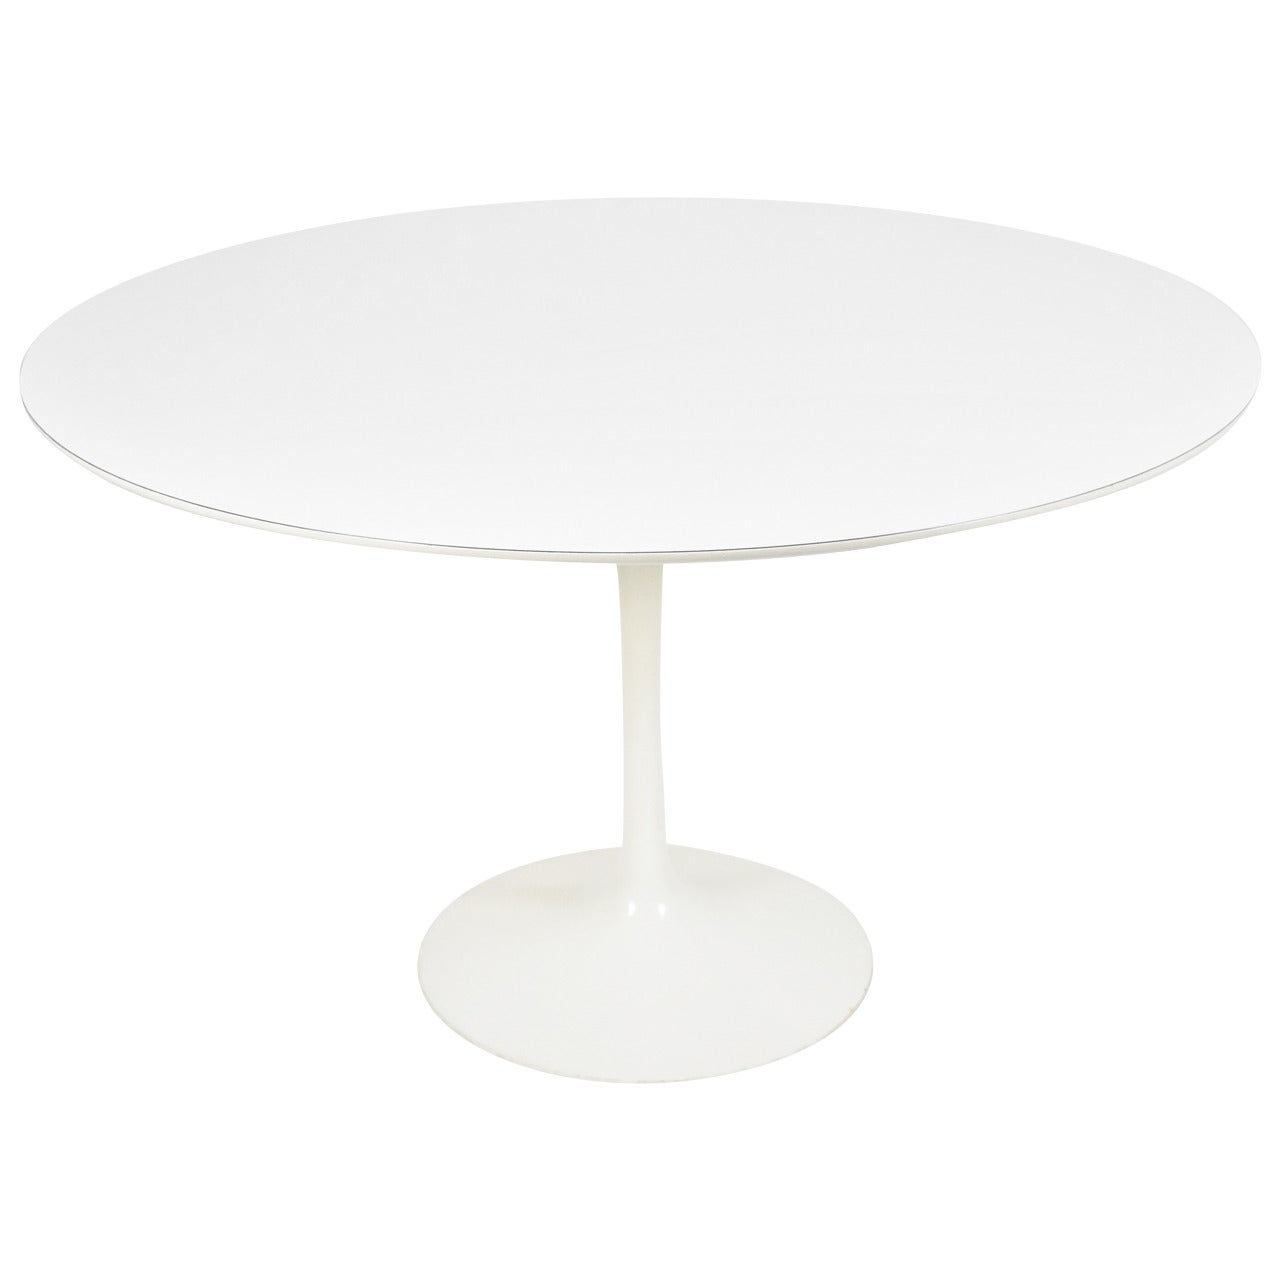 Eero Saarinen for Knoll White Laminate Tulip Table